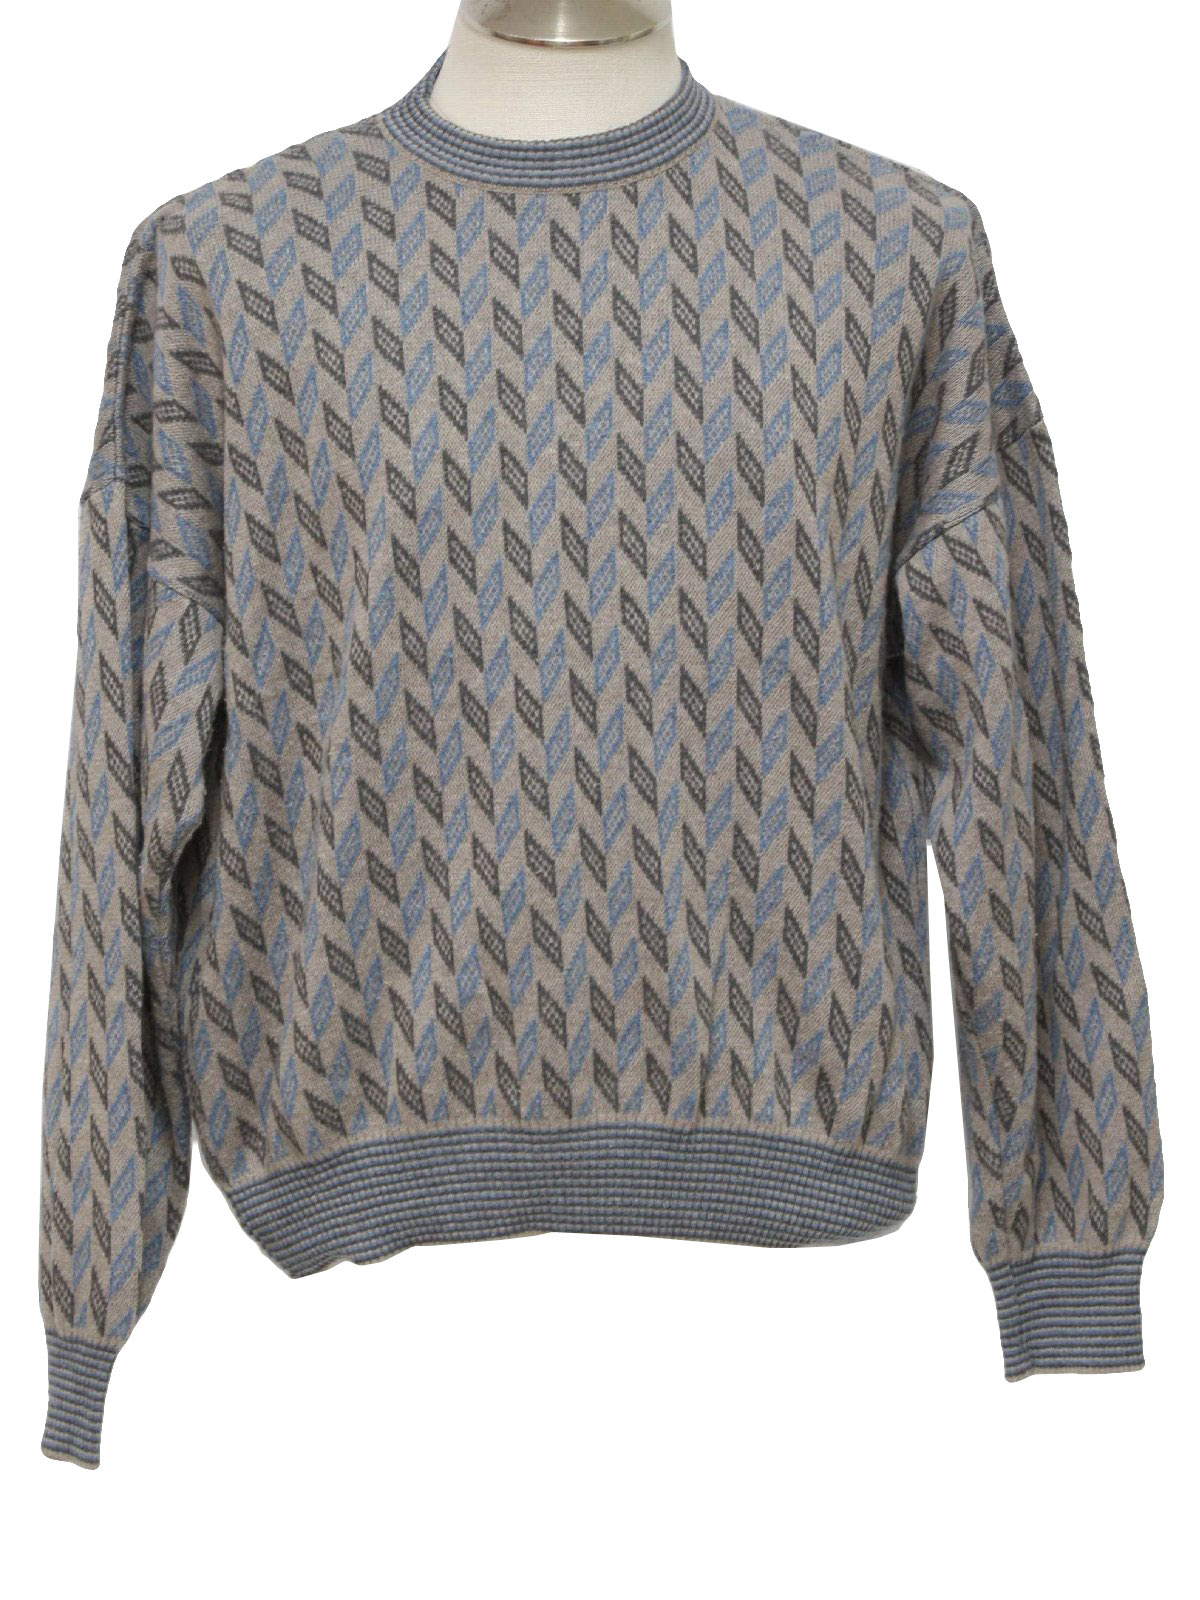 Retro 80s Sweater (Linea Uomo) : 80s -Linea Uomo- Mens grey, blue and ...